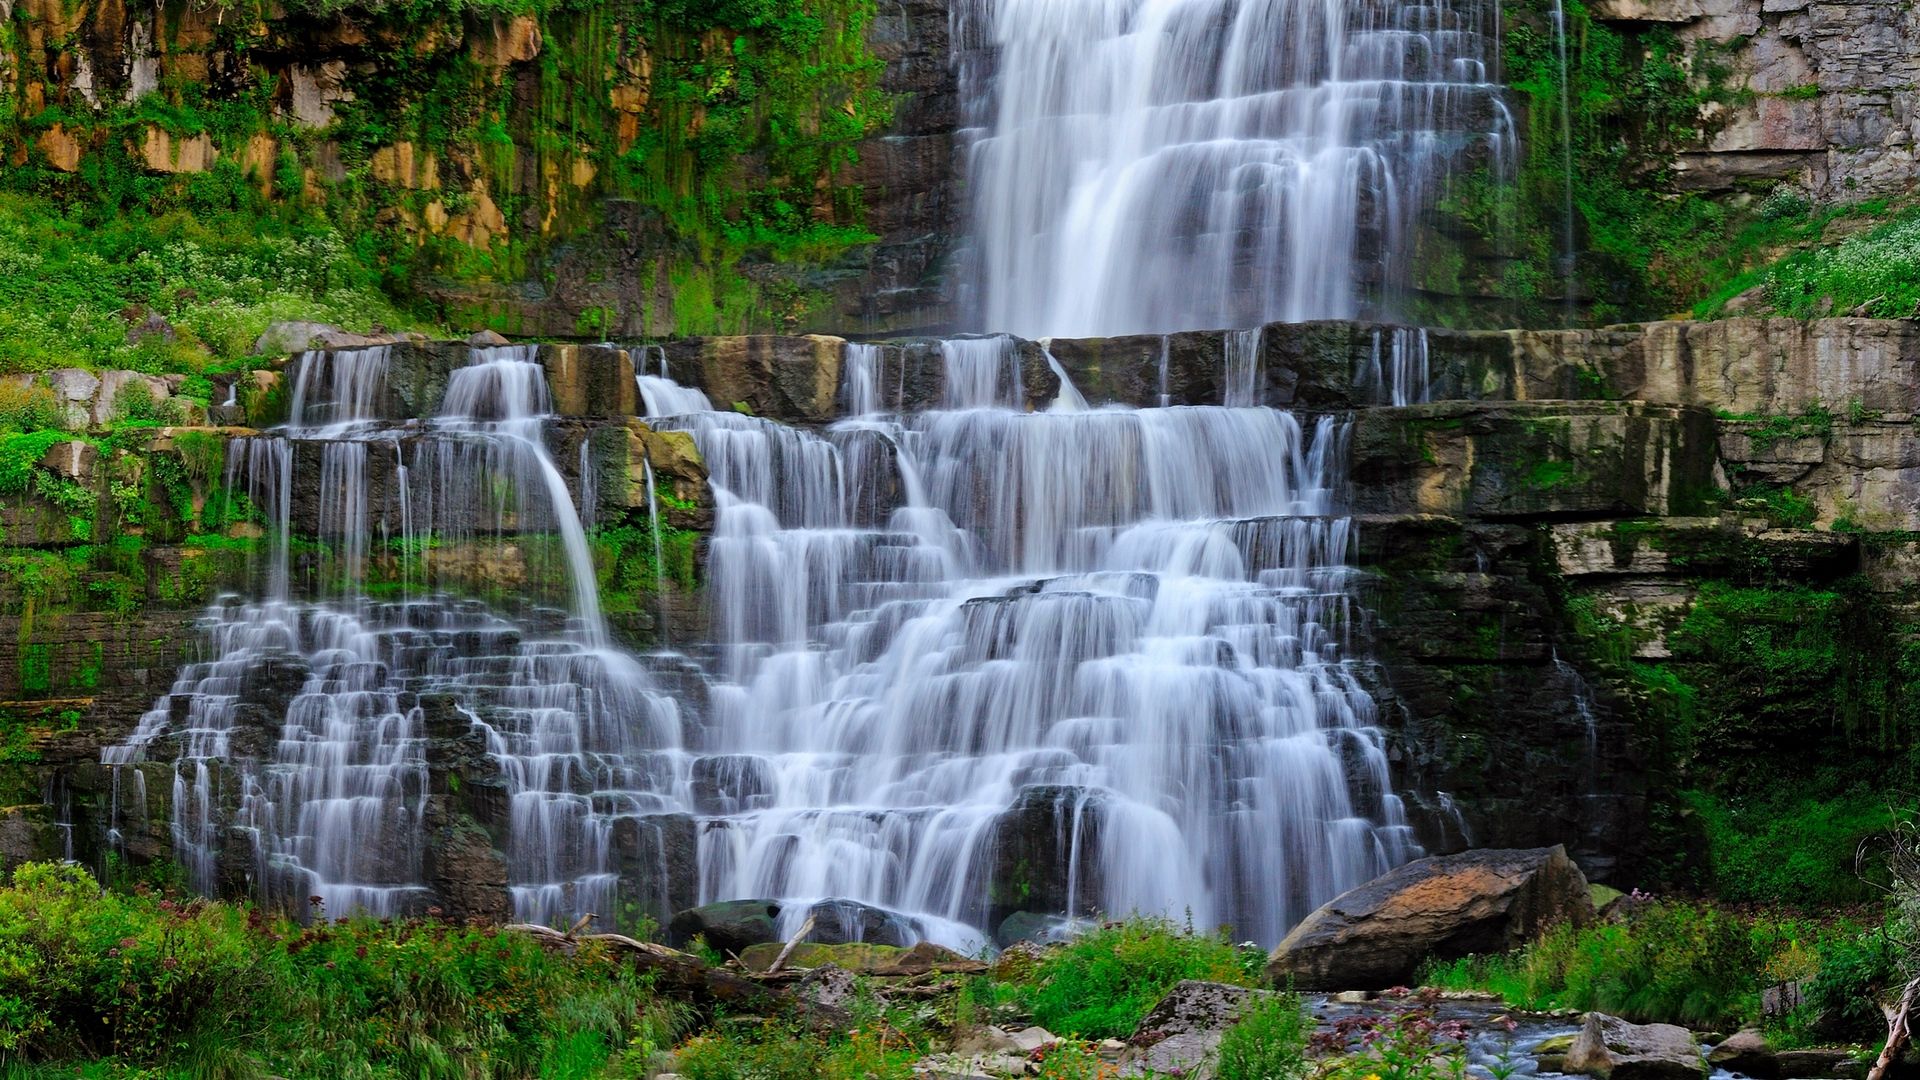 Download wallpaper 1920x1080 waterfall, stream, rocks, landscape